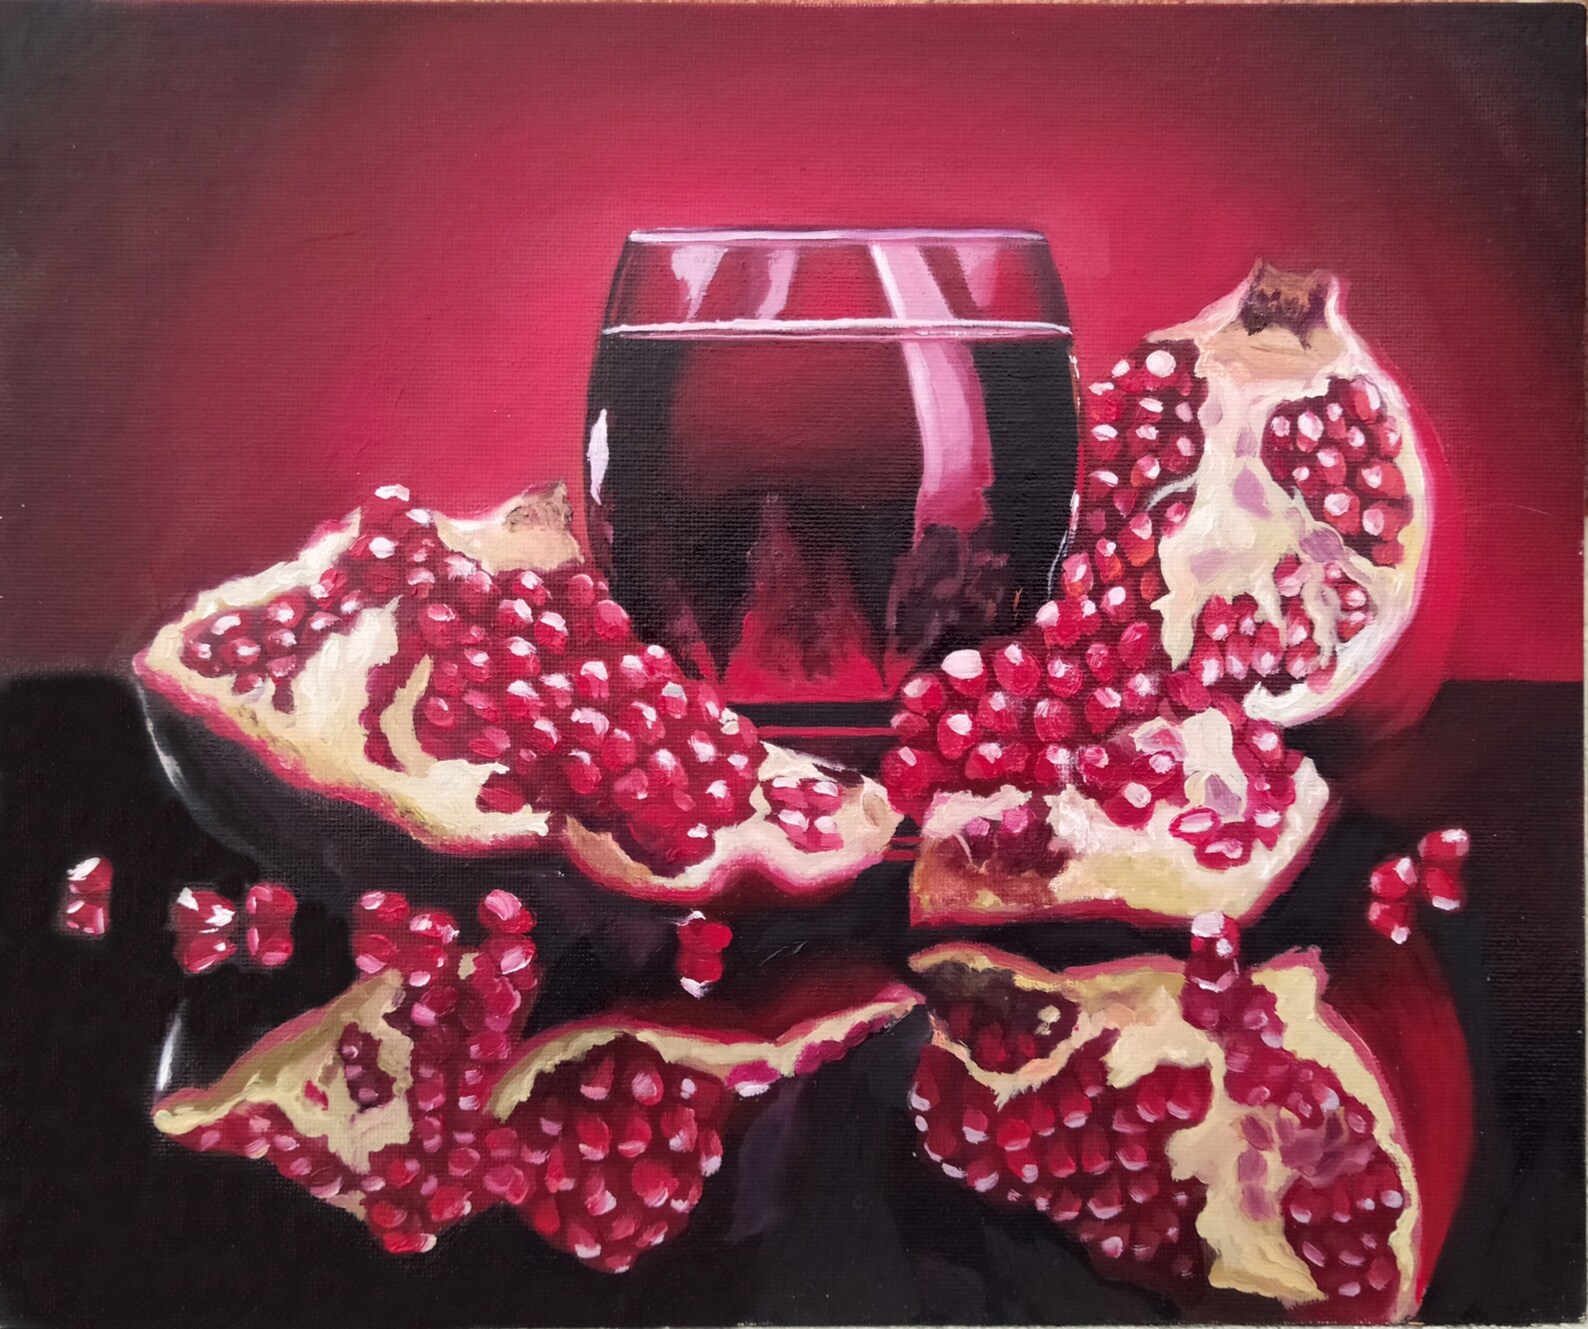 Pomegranate Painting Original Art Still Life Fruit Artwork Etsy